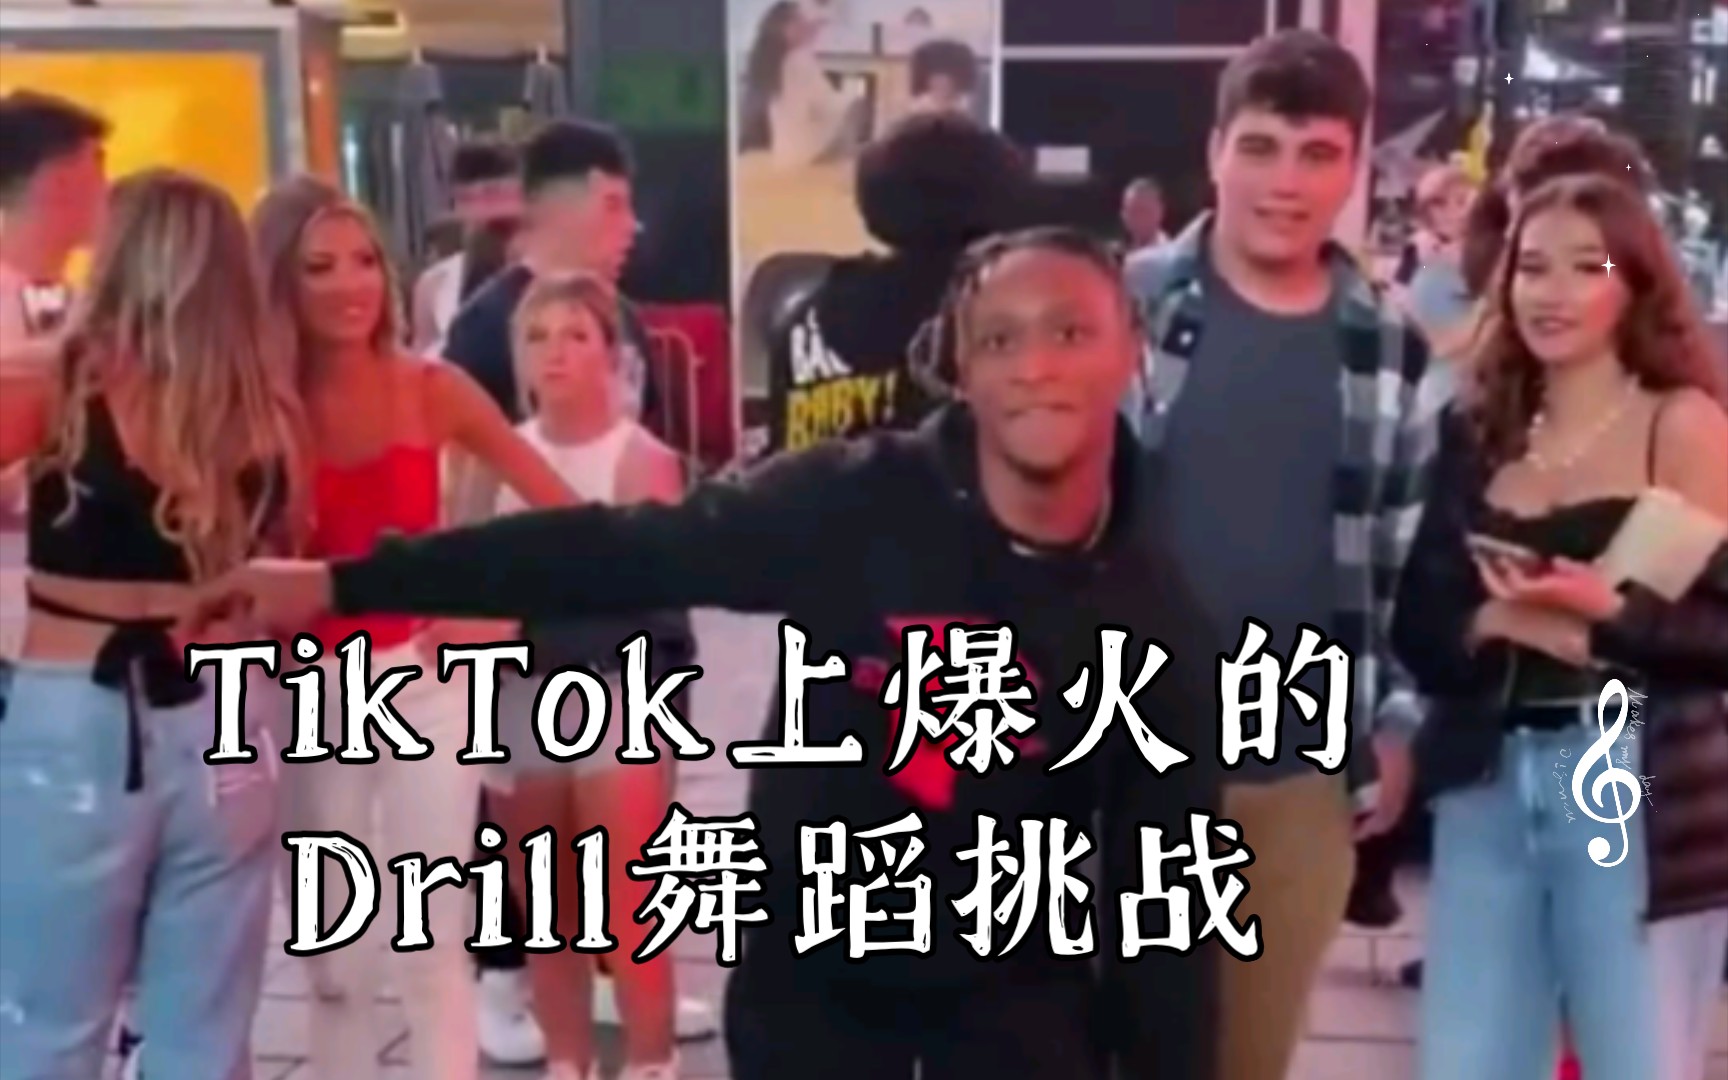 TikTok上爆火的Drill舞蹈挑战